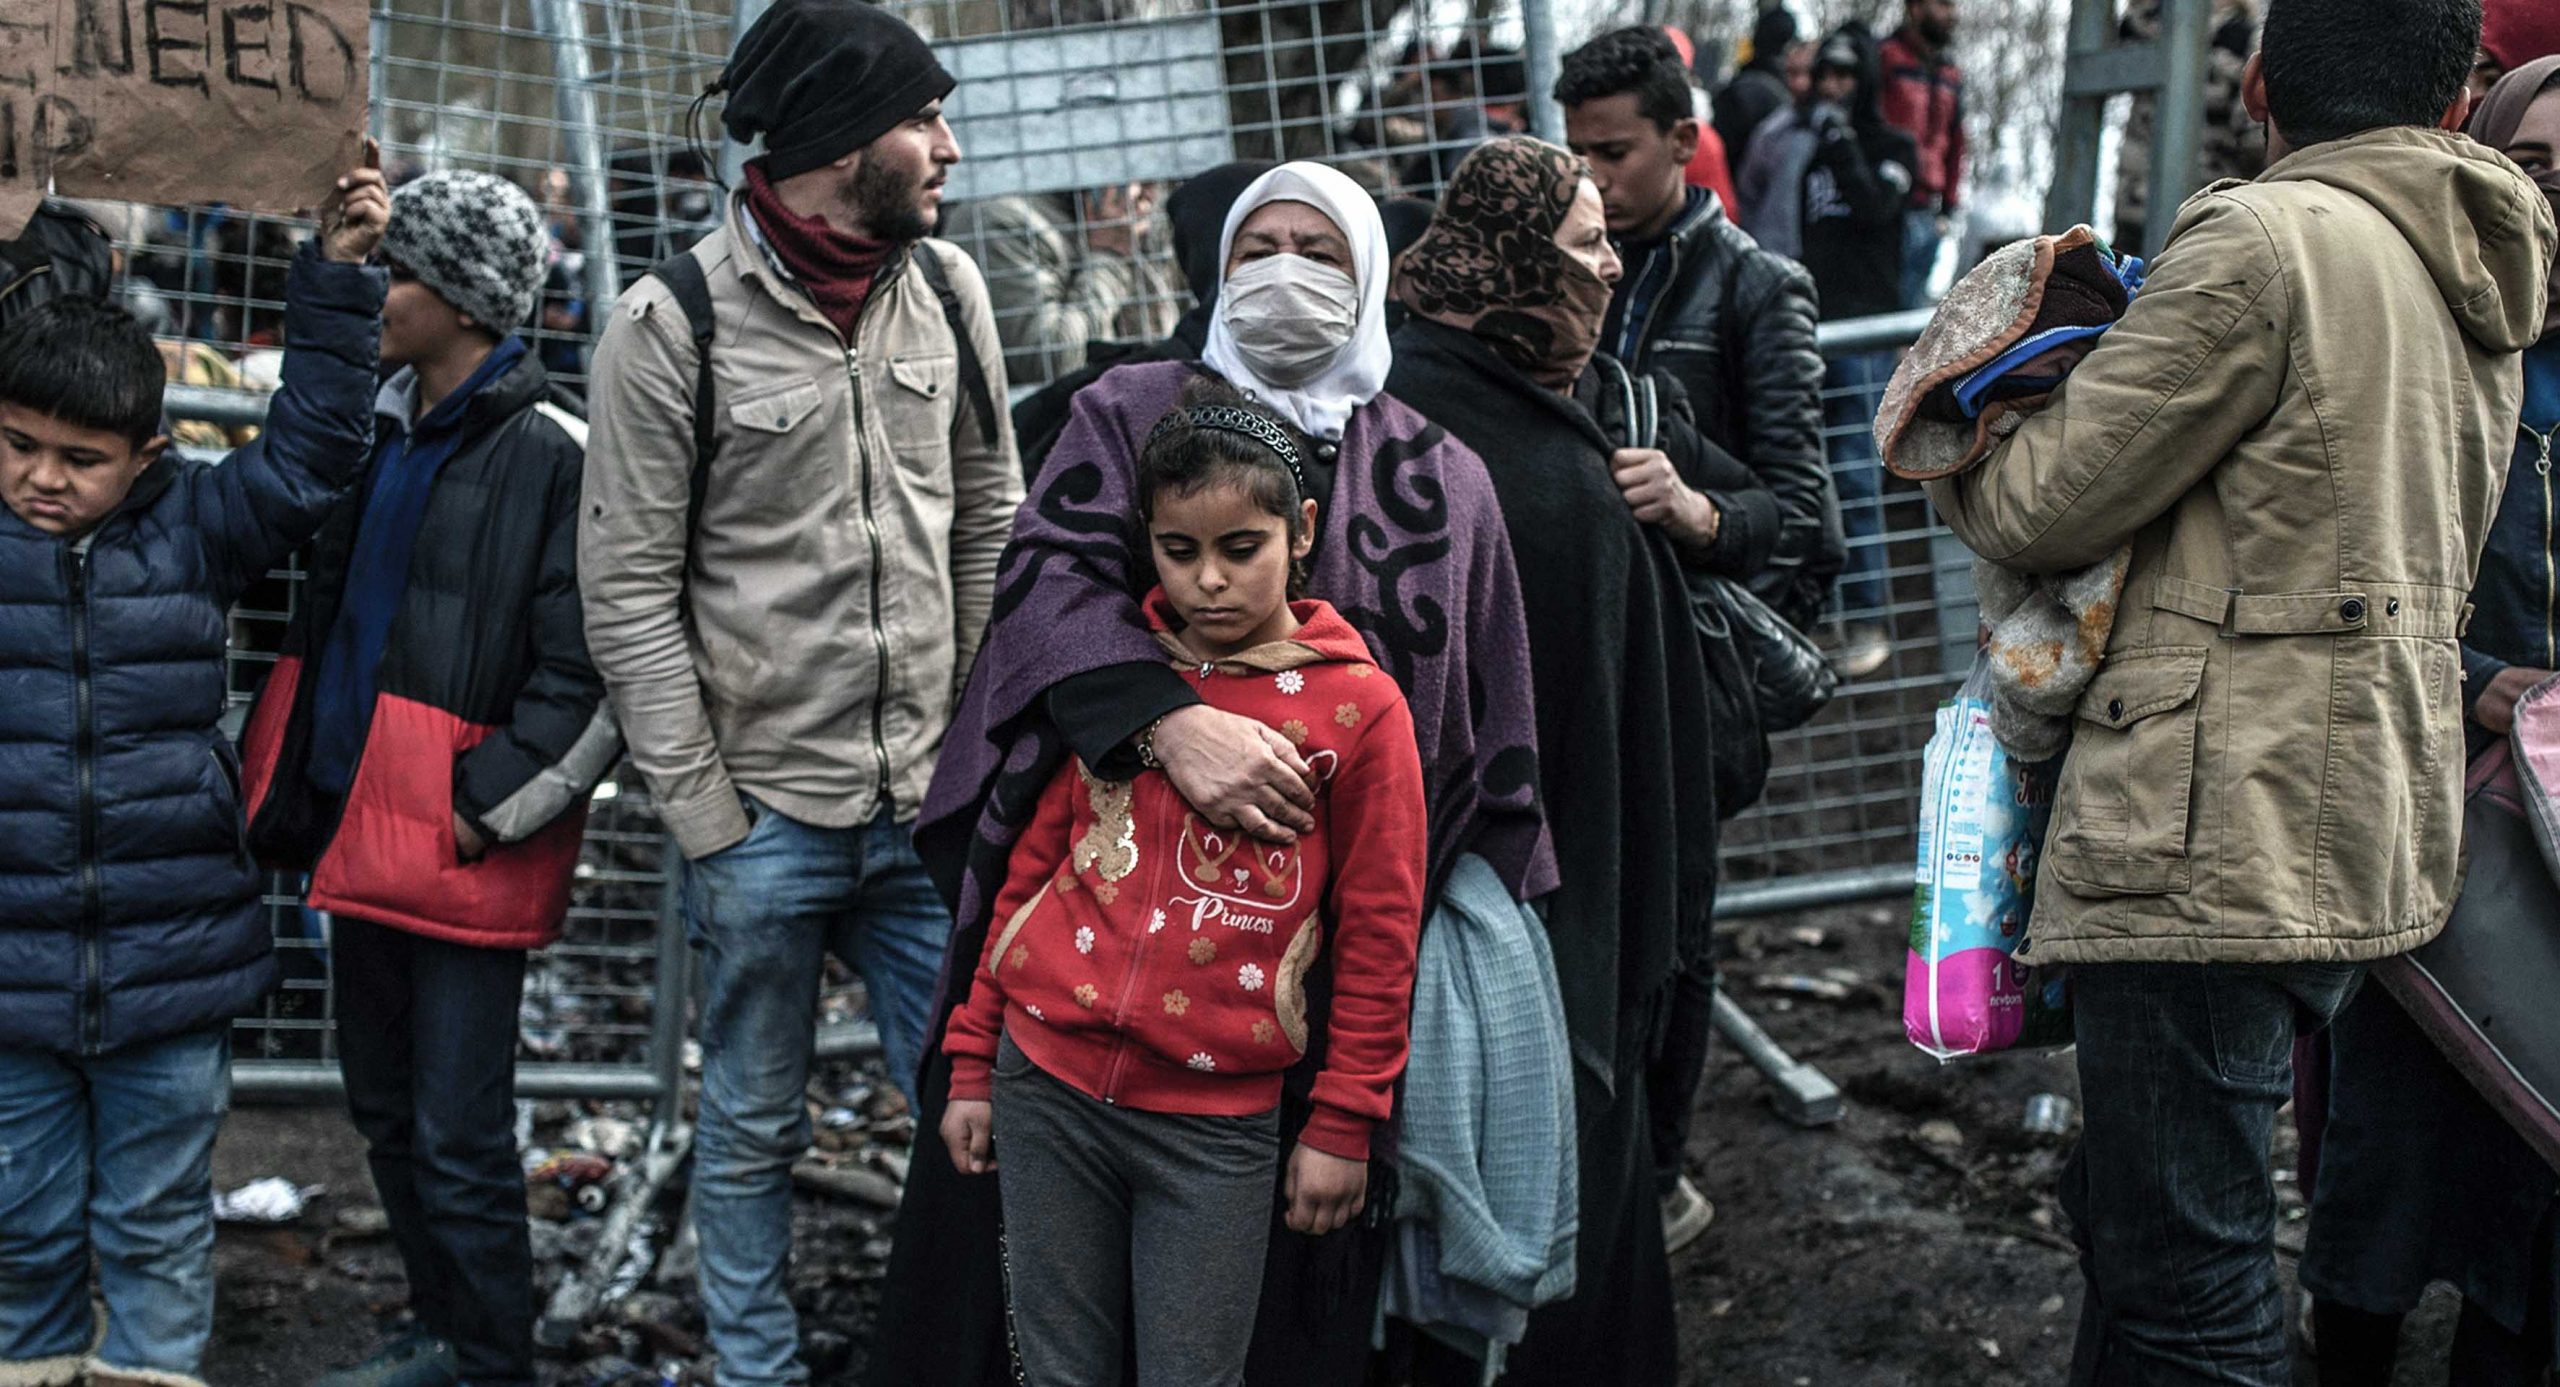 صورة وأخيراً: أزمة تُساوي بين جميع البشر، باستثناء الفقراء واللاجئين والمُهاجرين والمُحتّلين والوافدين